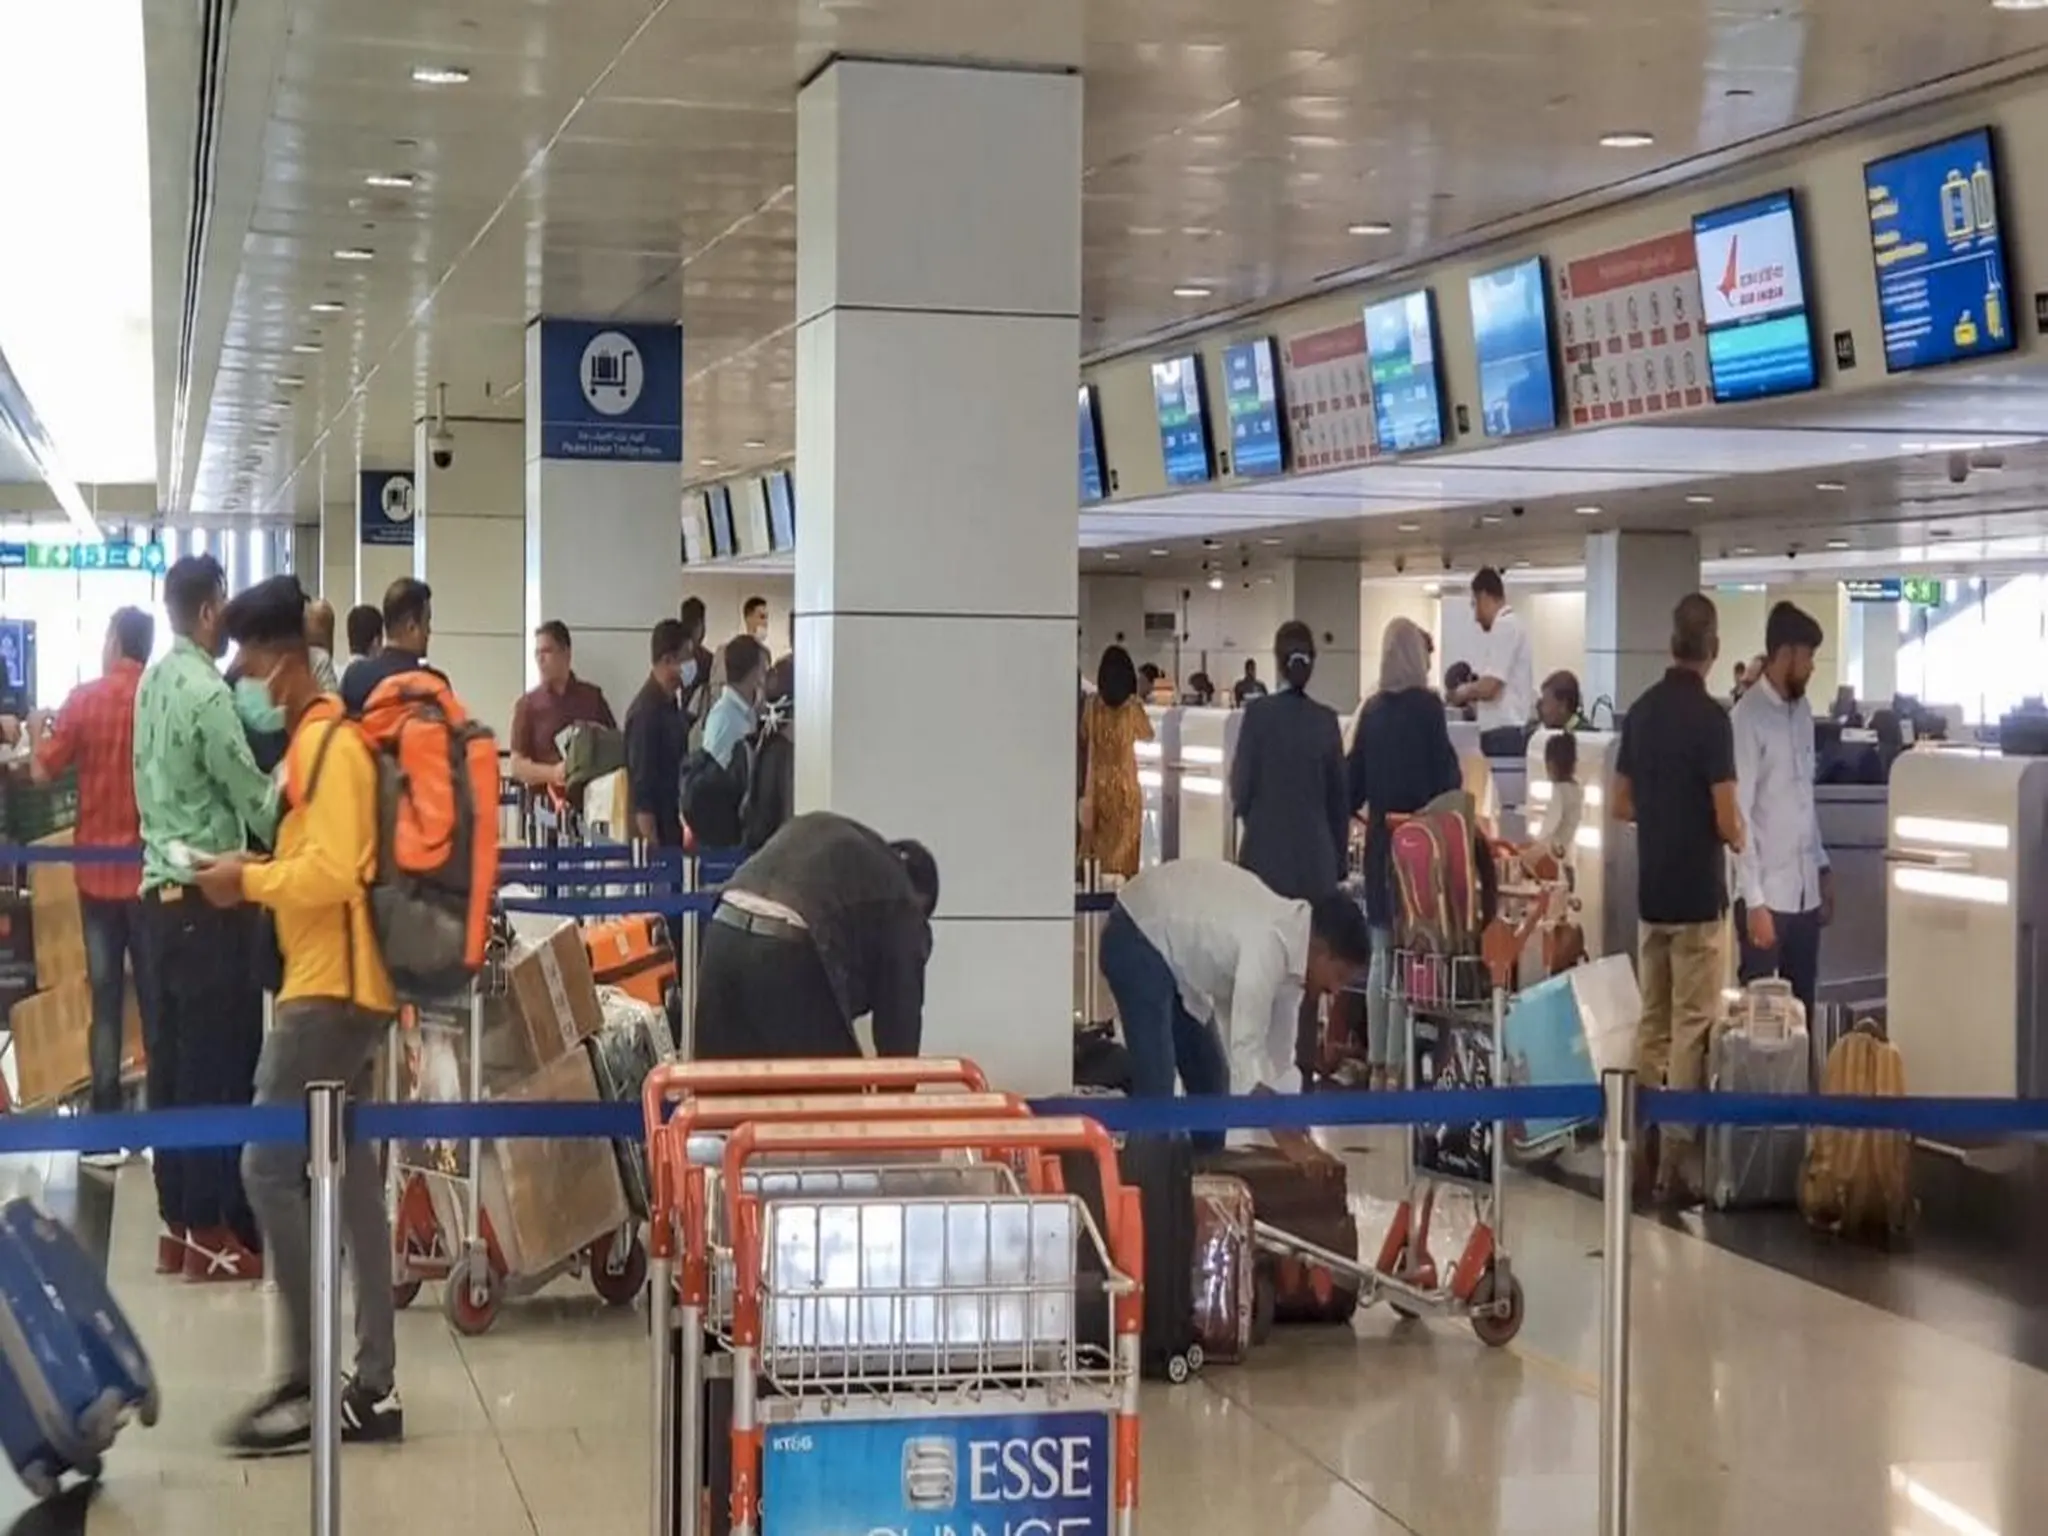 مطار دبي يصدر بيان هام للمسافرين بشأن تأخير بعض الرحلات الدولية